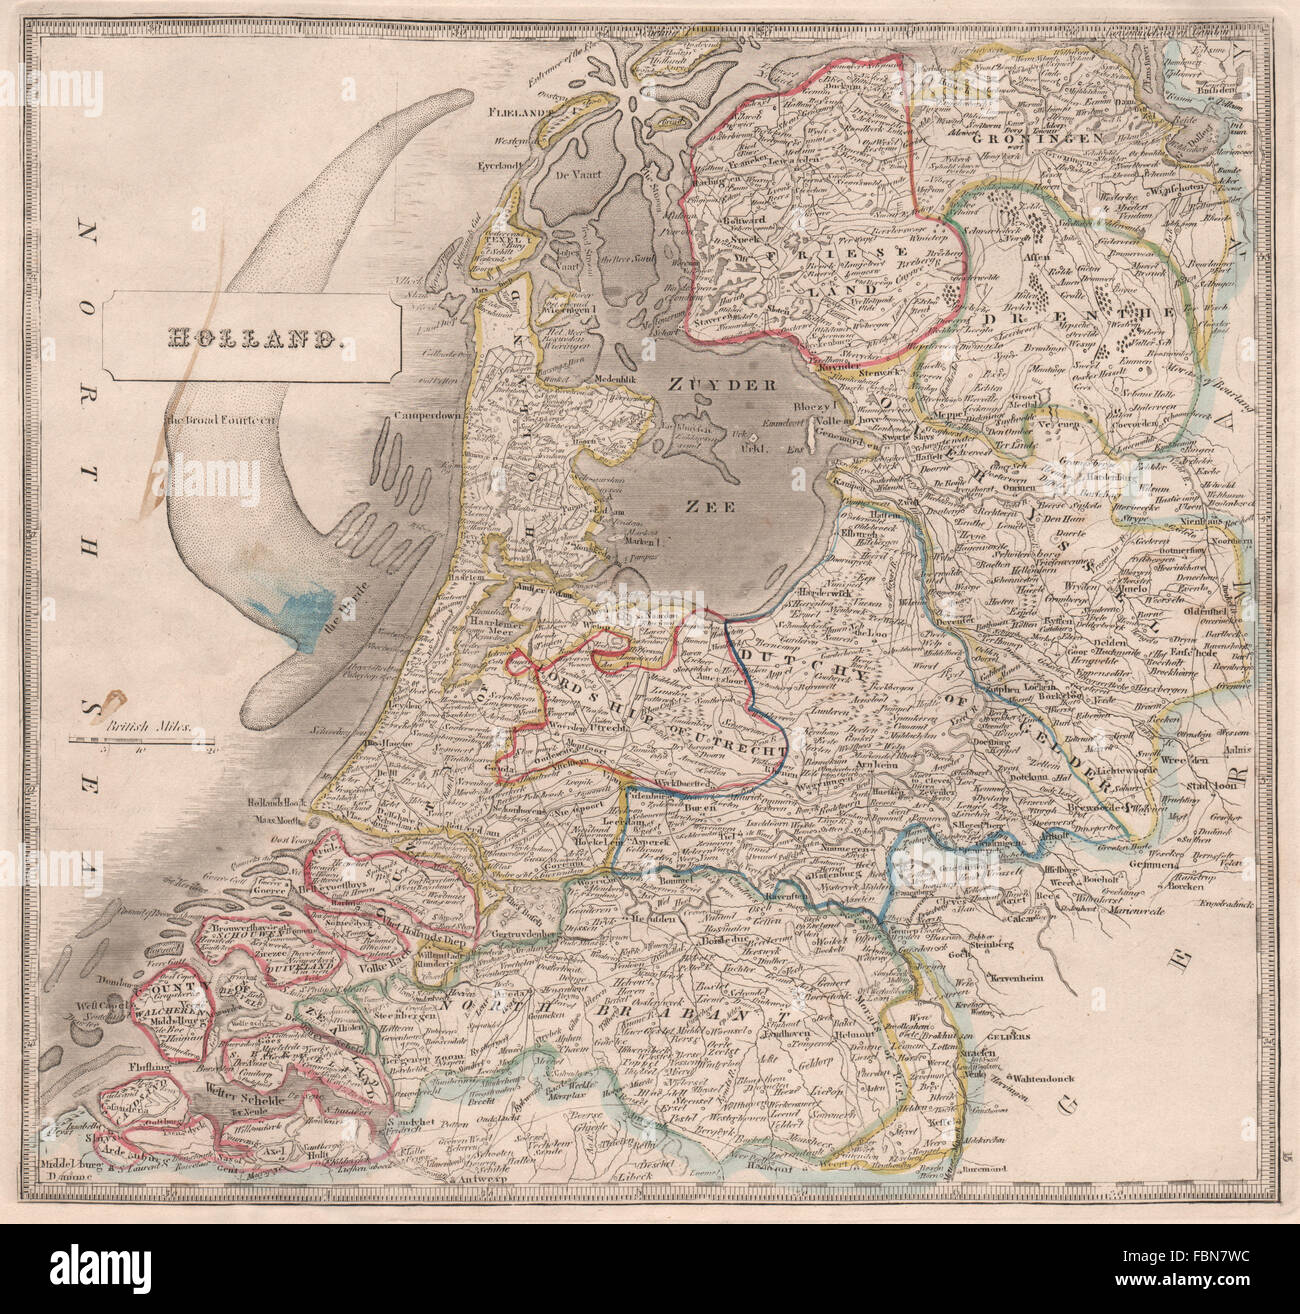 HOLLAND. Señorío de Utrecht. El amplio 14. "El Harde'. JOHNSON, 1850 mapa Foto de stock